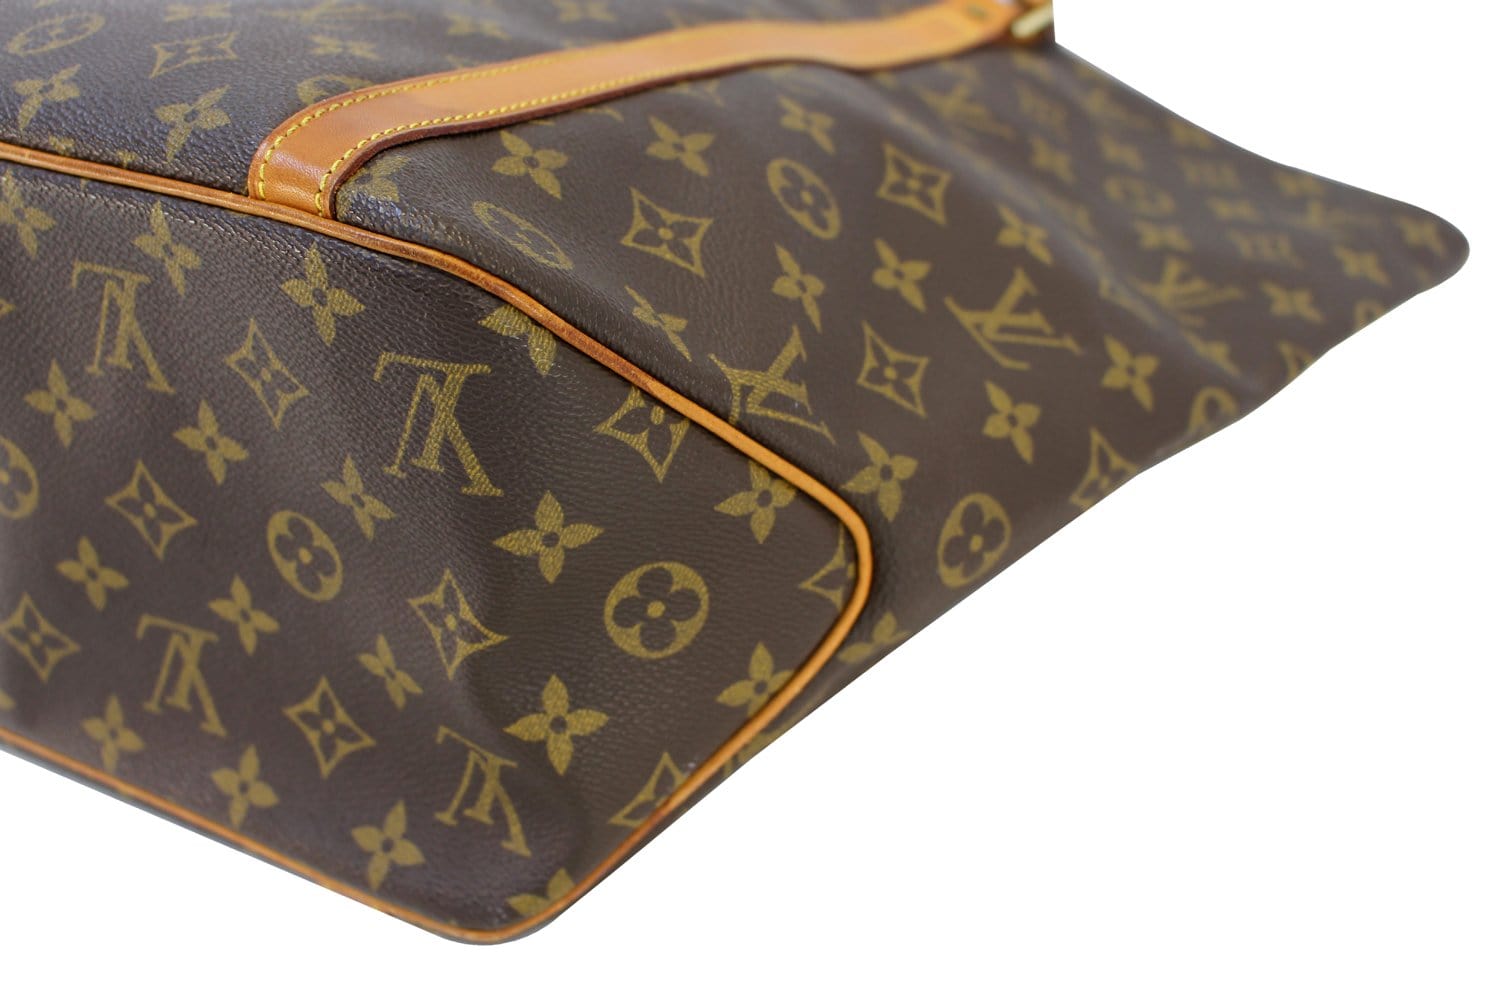 Louis Vuitton Monogram Sac Shopping GM Tote Bag 71lv218s at